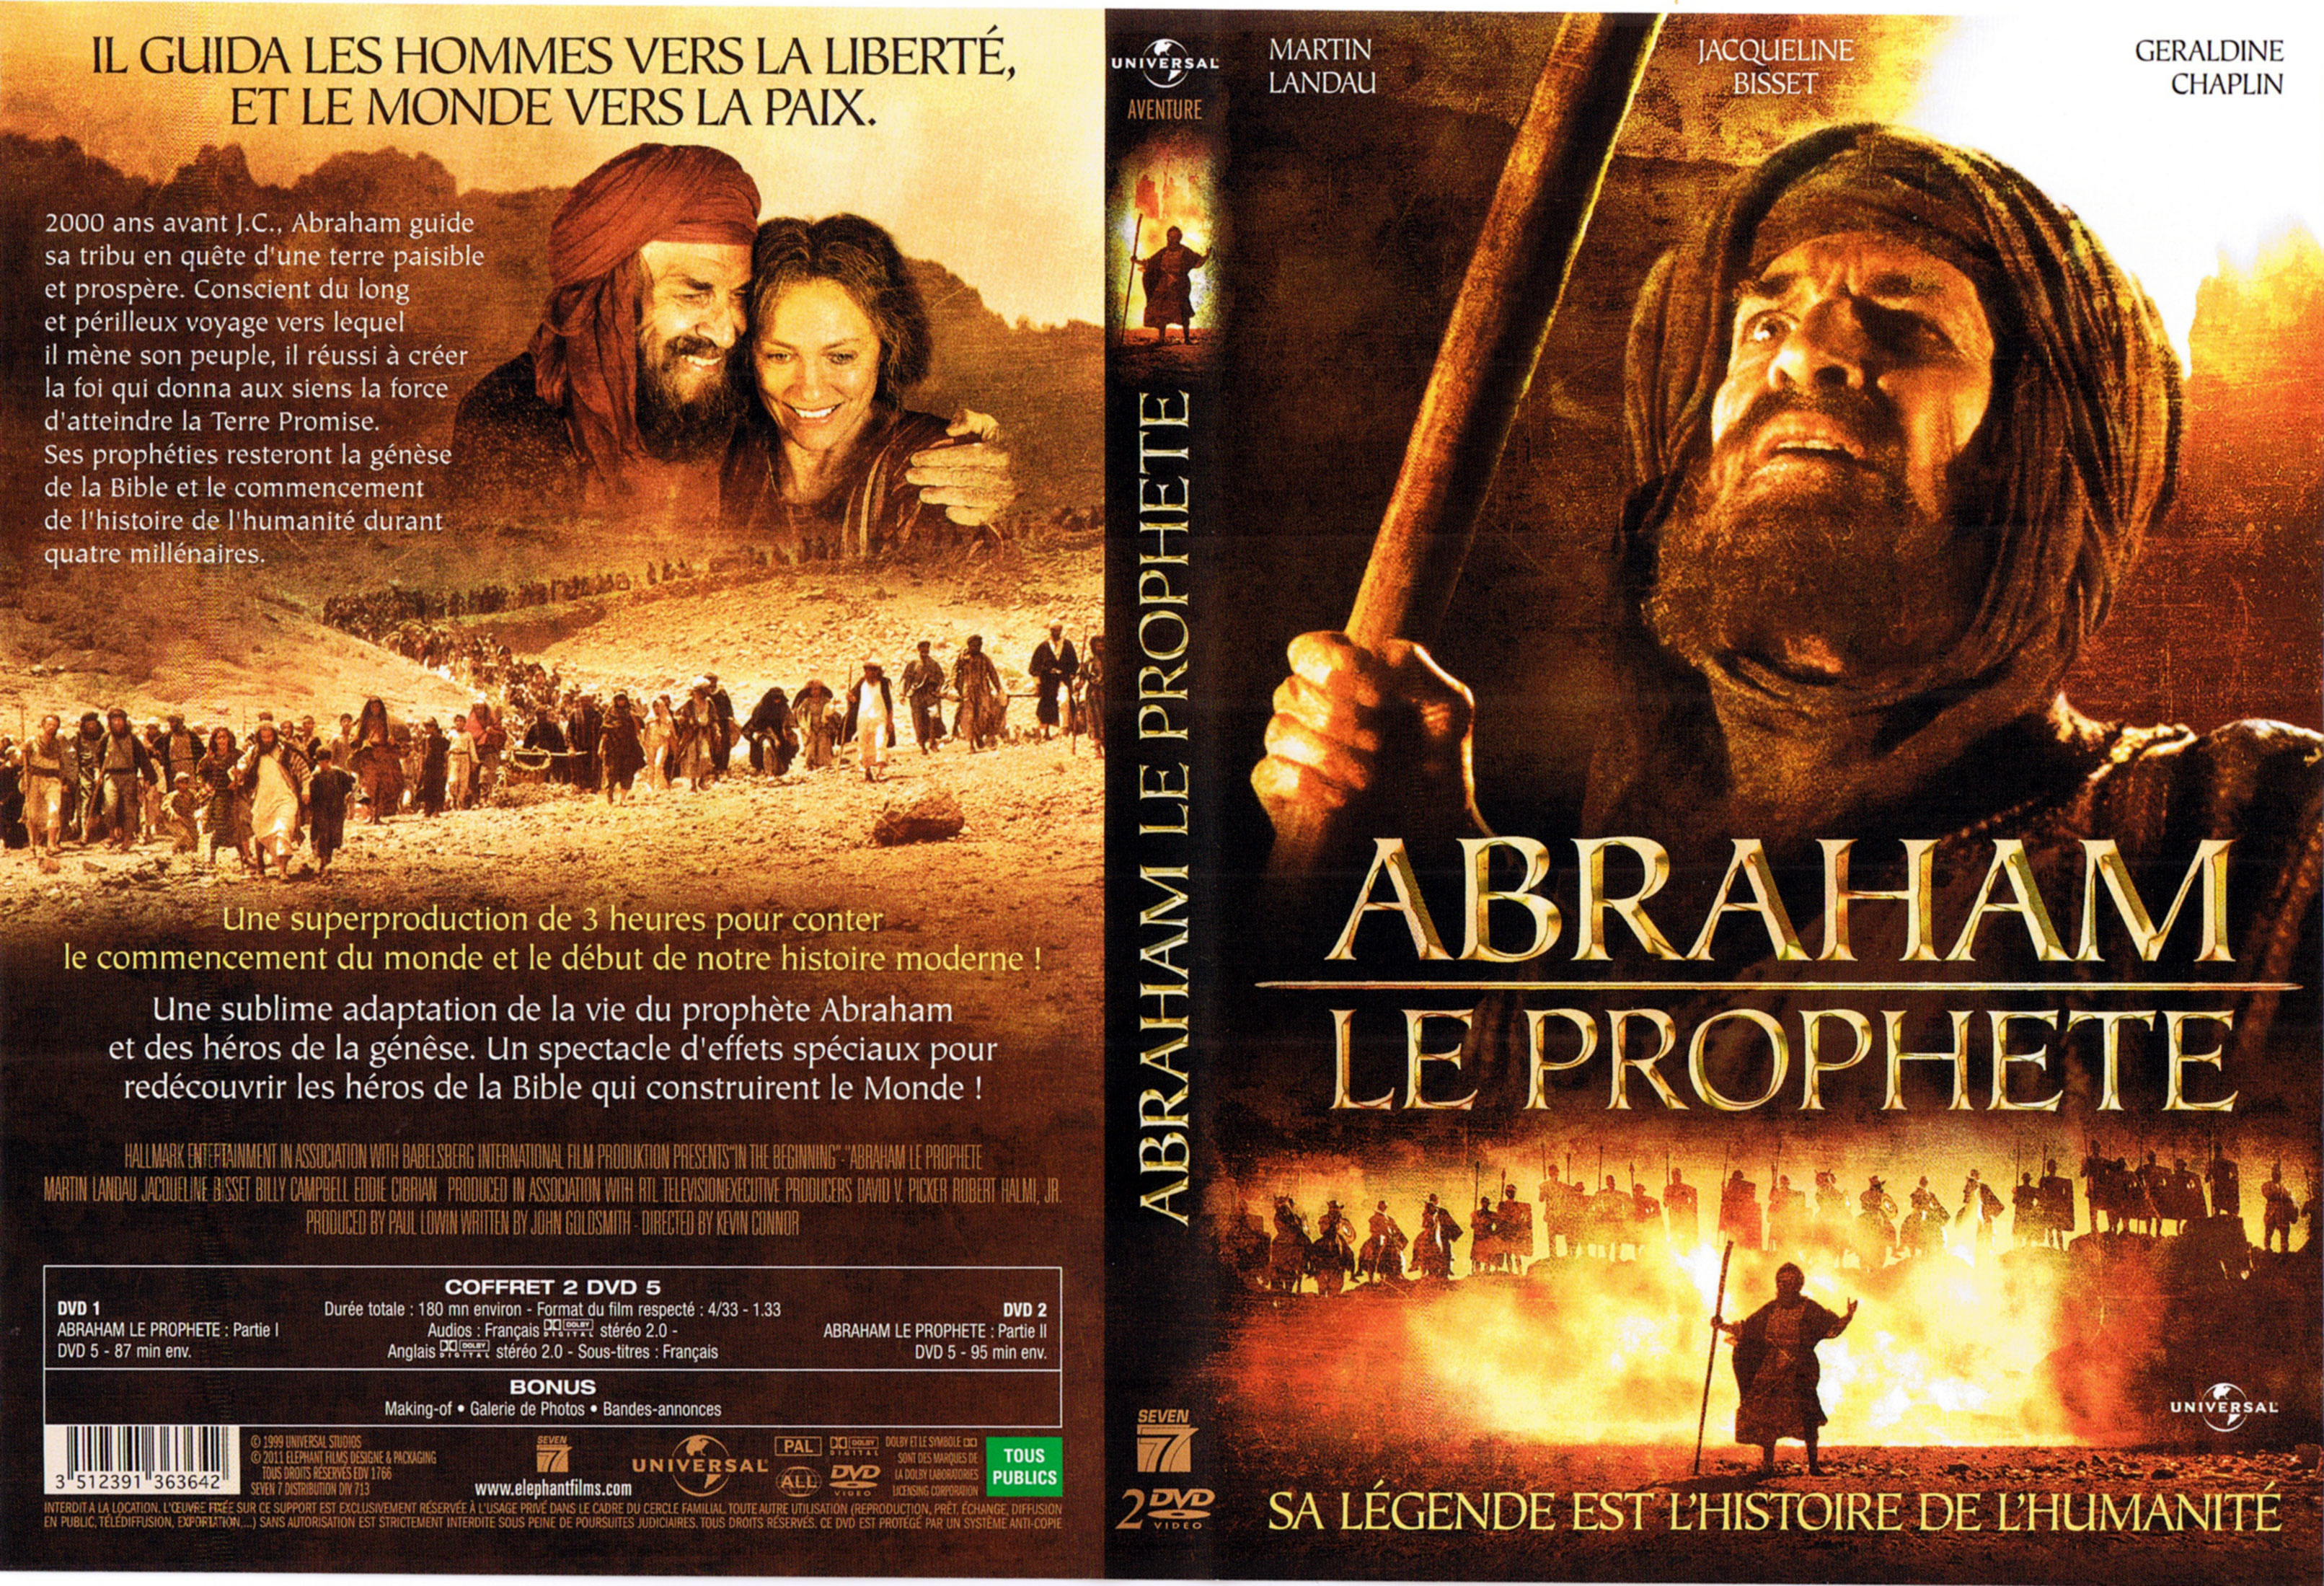 Jaquette DVD Abraham le prophte